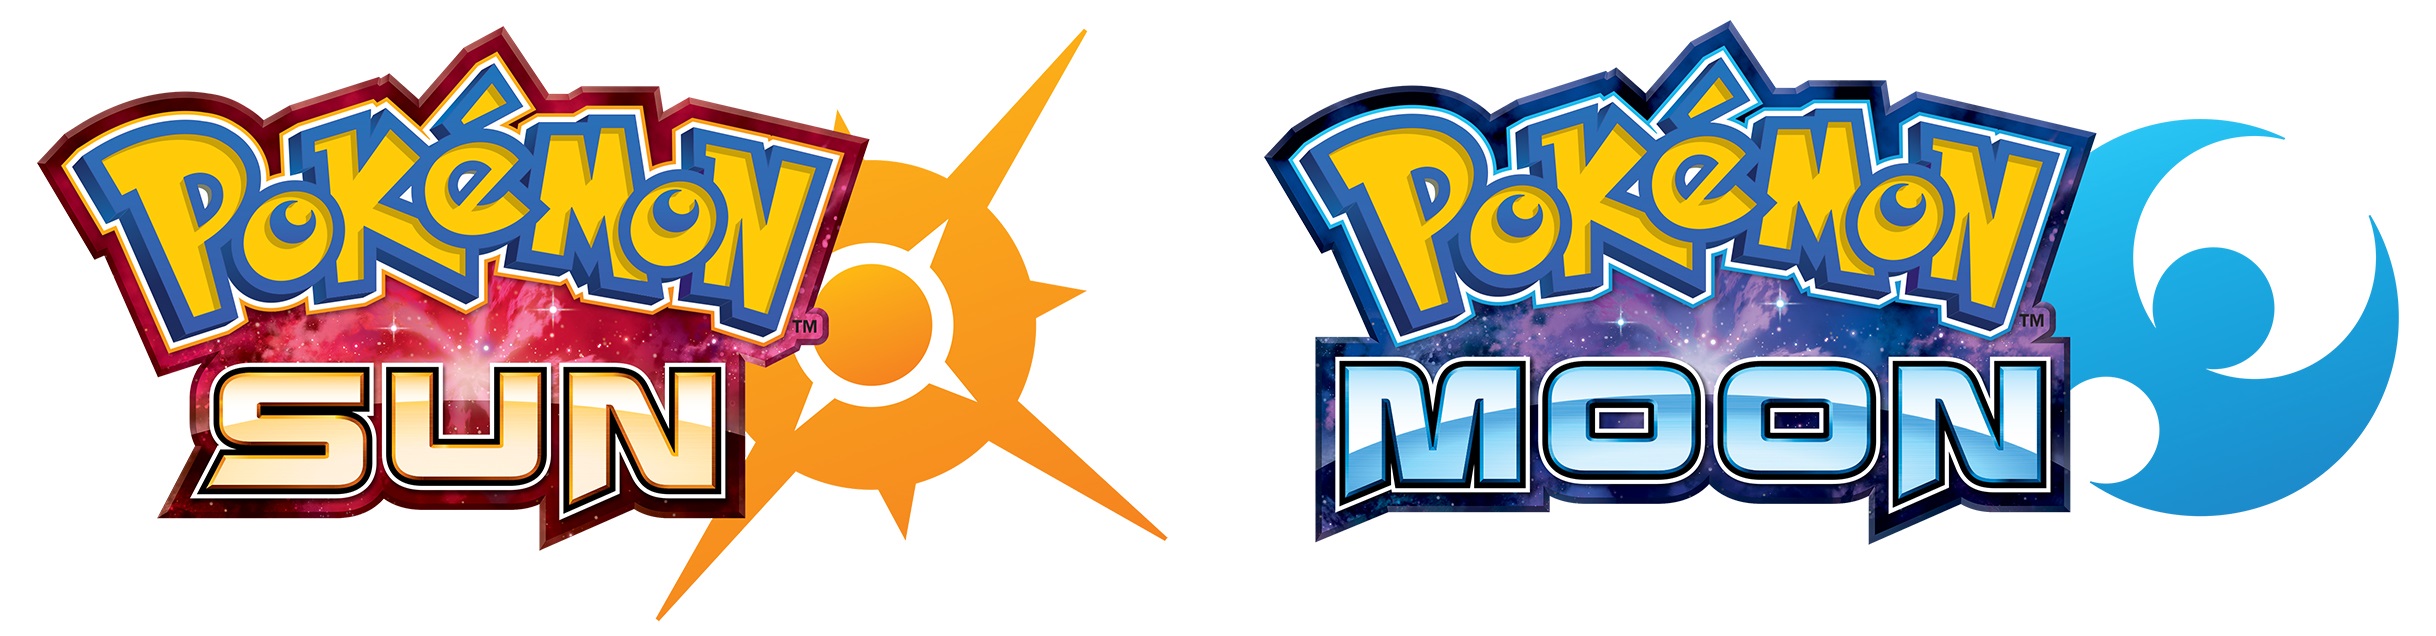 Pokémon Sole e Pokémon Luna: Le differenze tra le due versioni